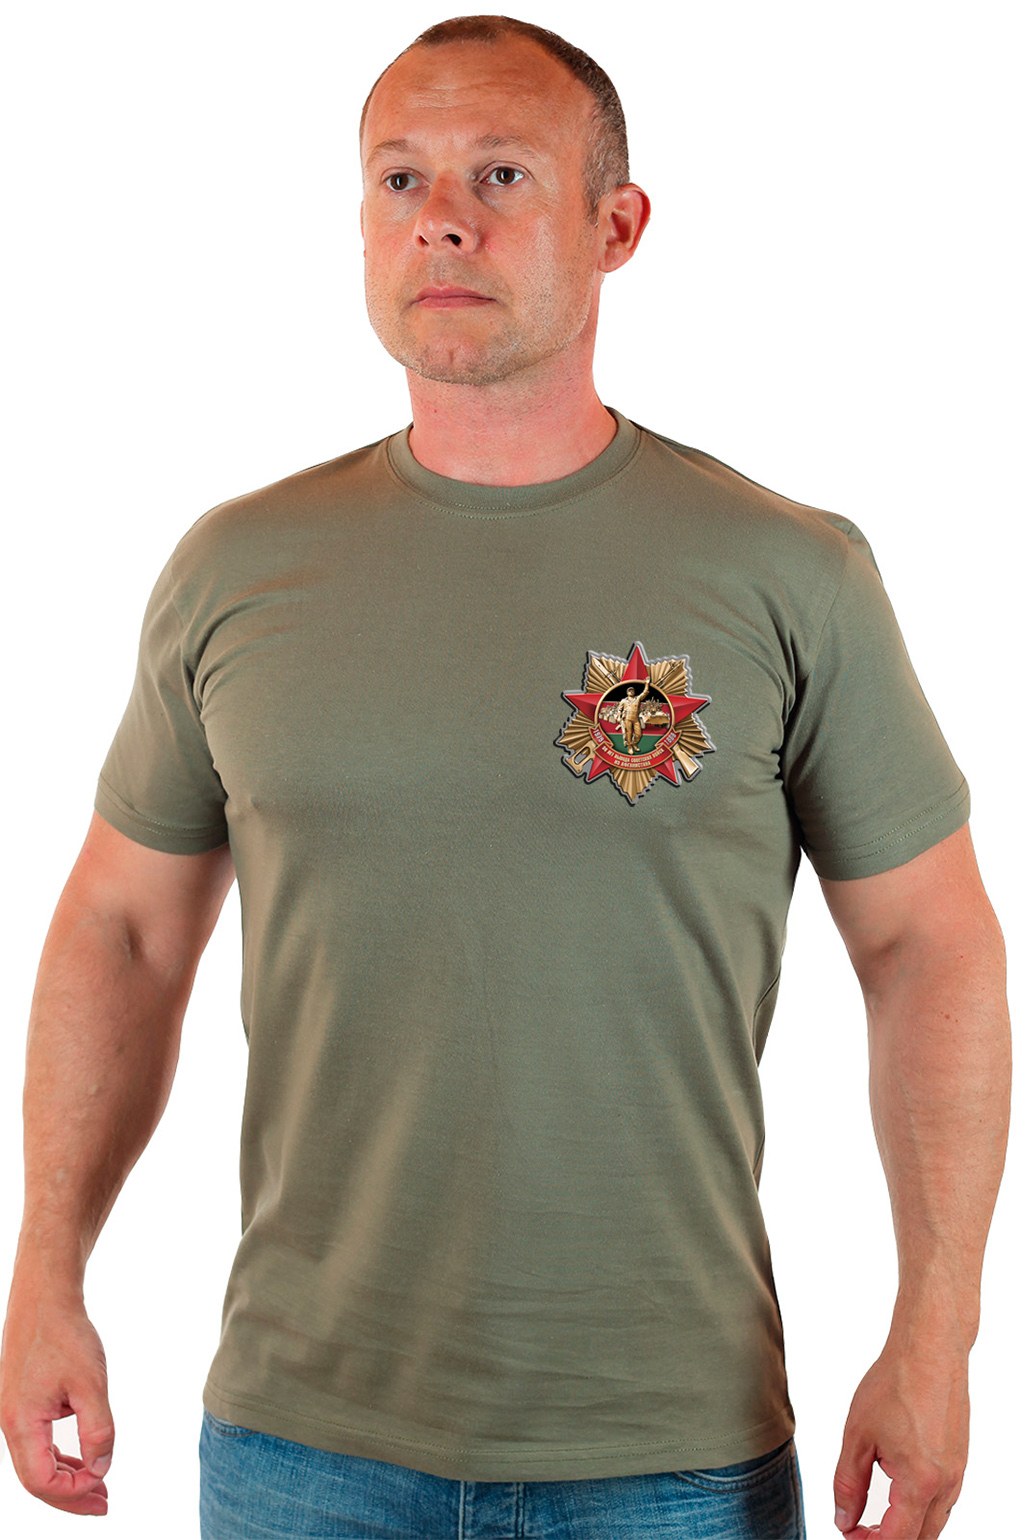 Мужская футболка, декорированная стилизованным афганским орденом. 